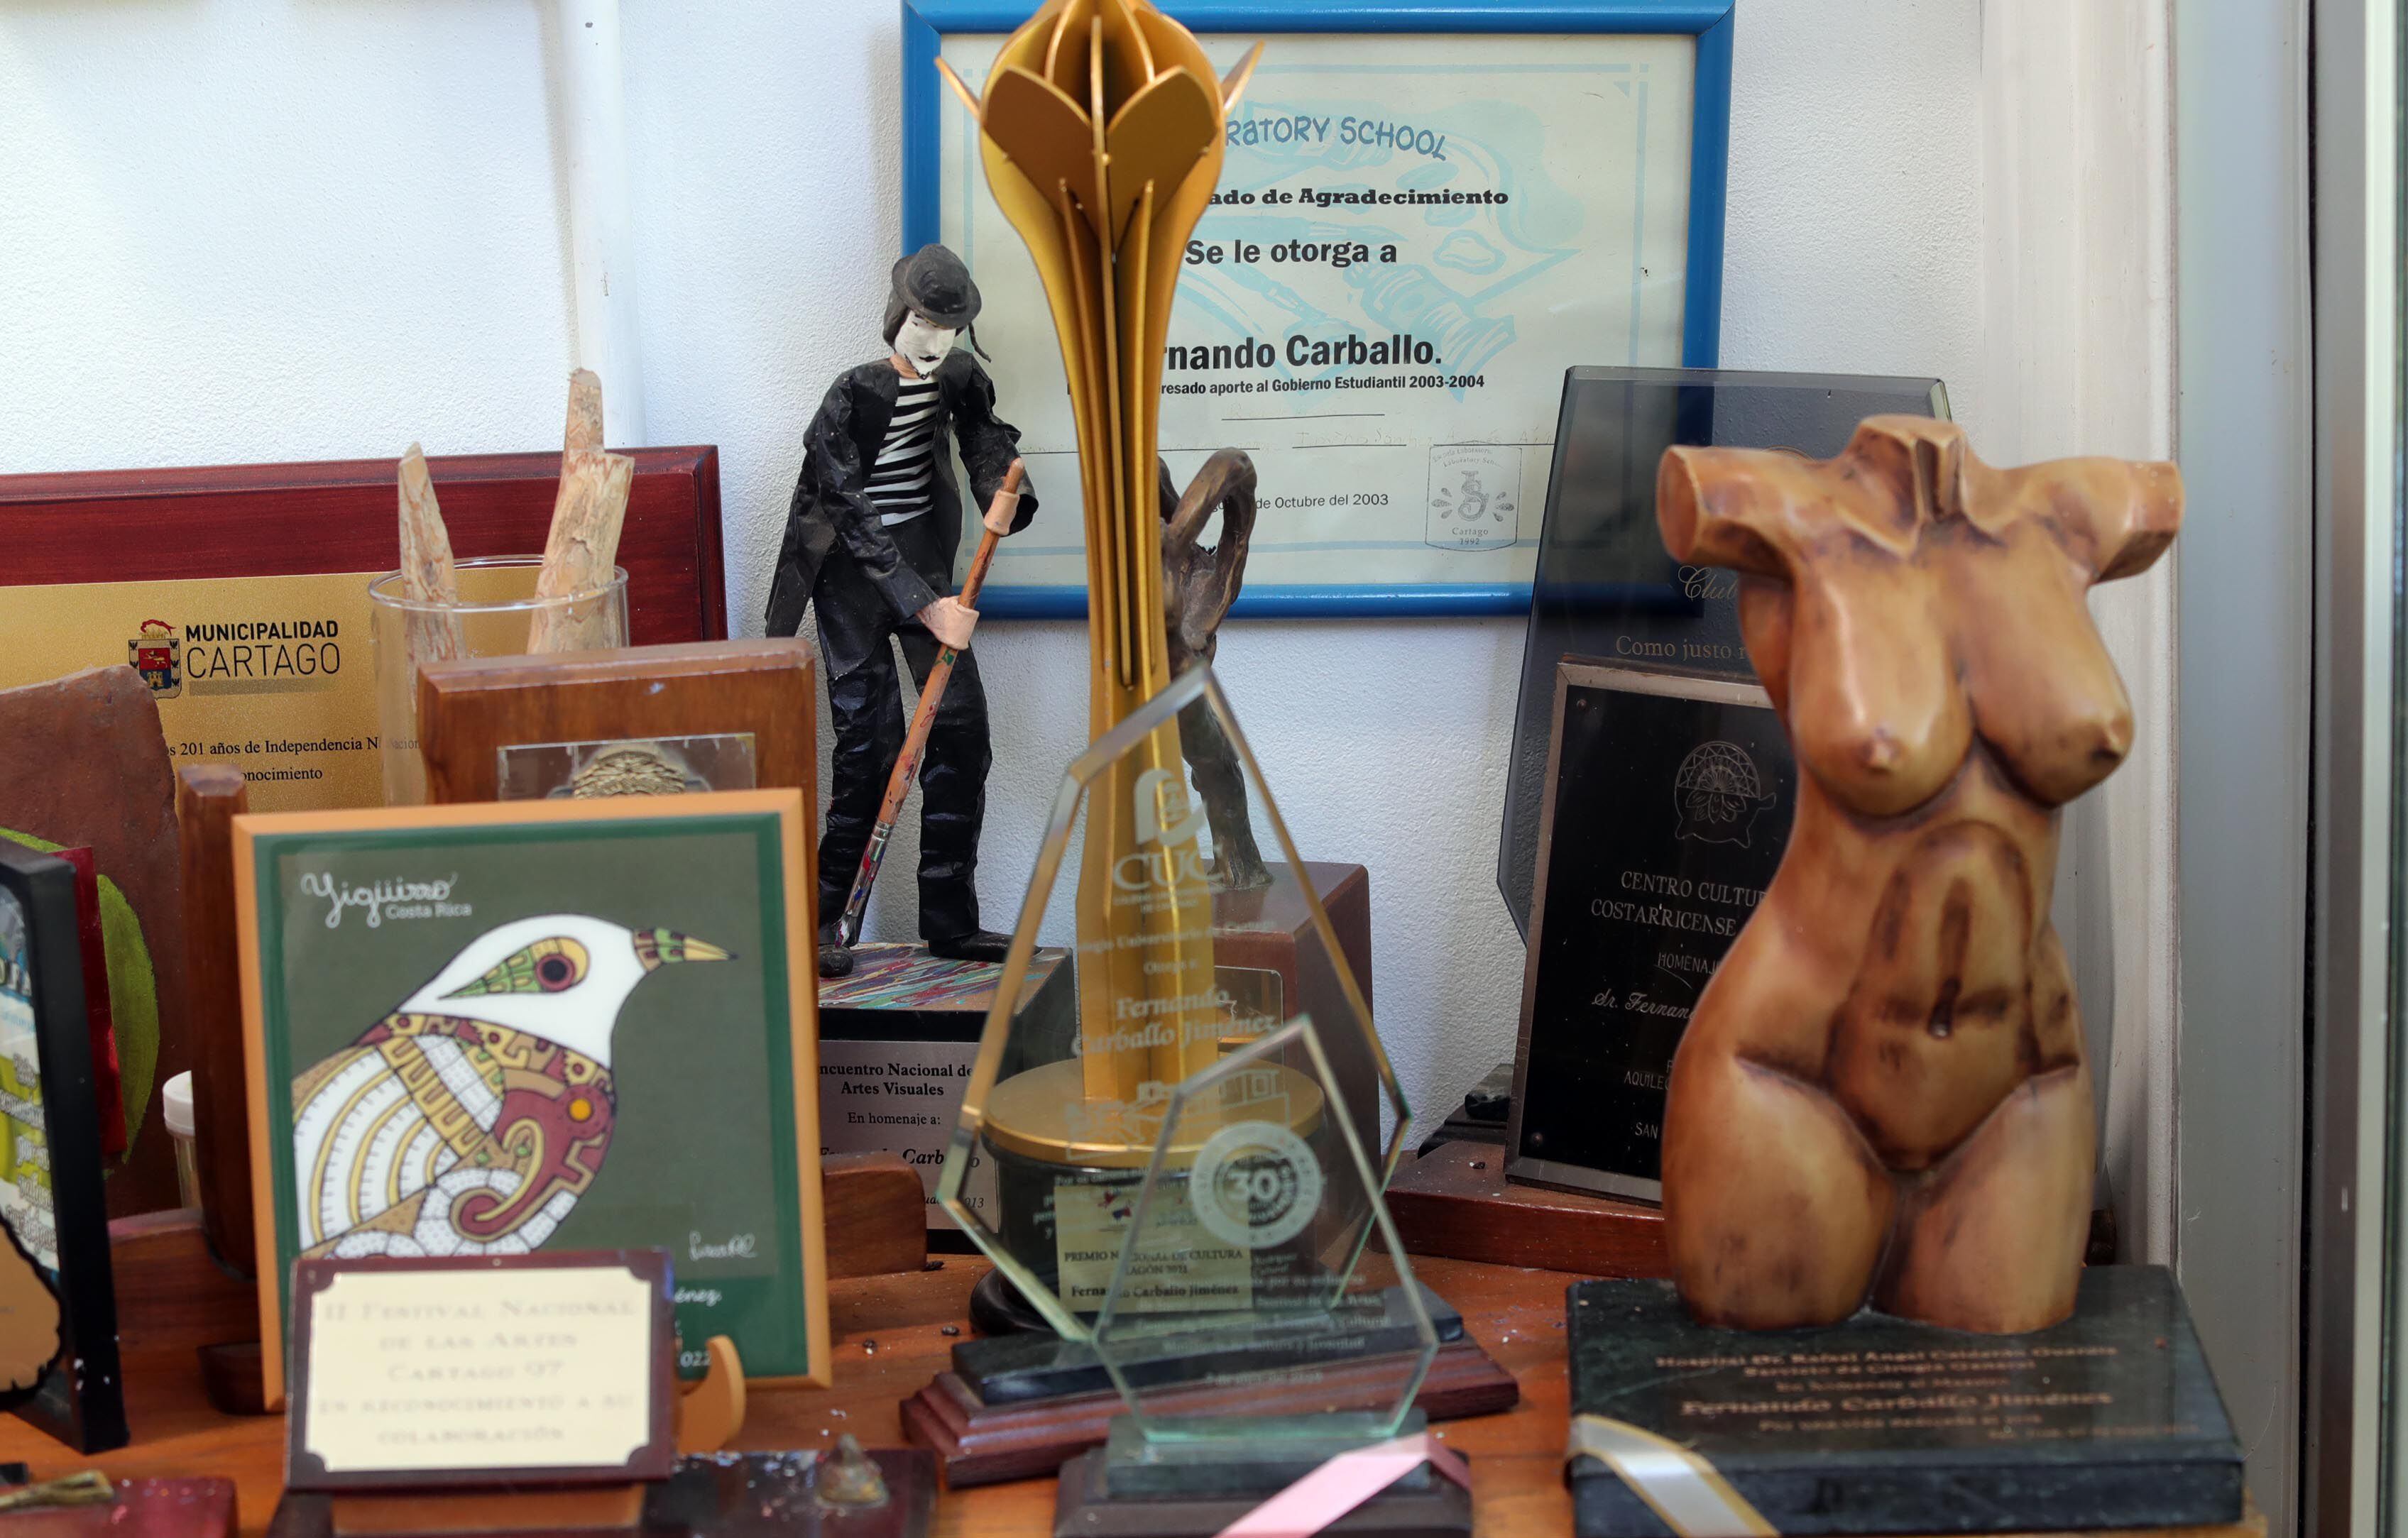 En su taller, se acumulan los reconocimientos a la labor de Carballo. Aquí vemos el Premio Magón (estatuilla de metal) y un homenaje del Colegio Universitario de Cartago, entre otros. 